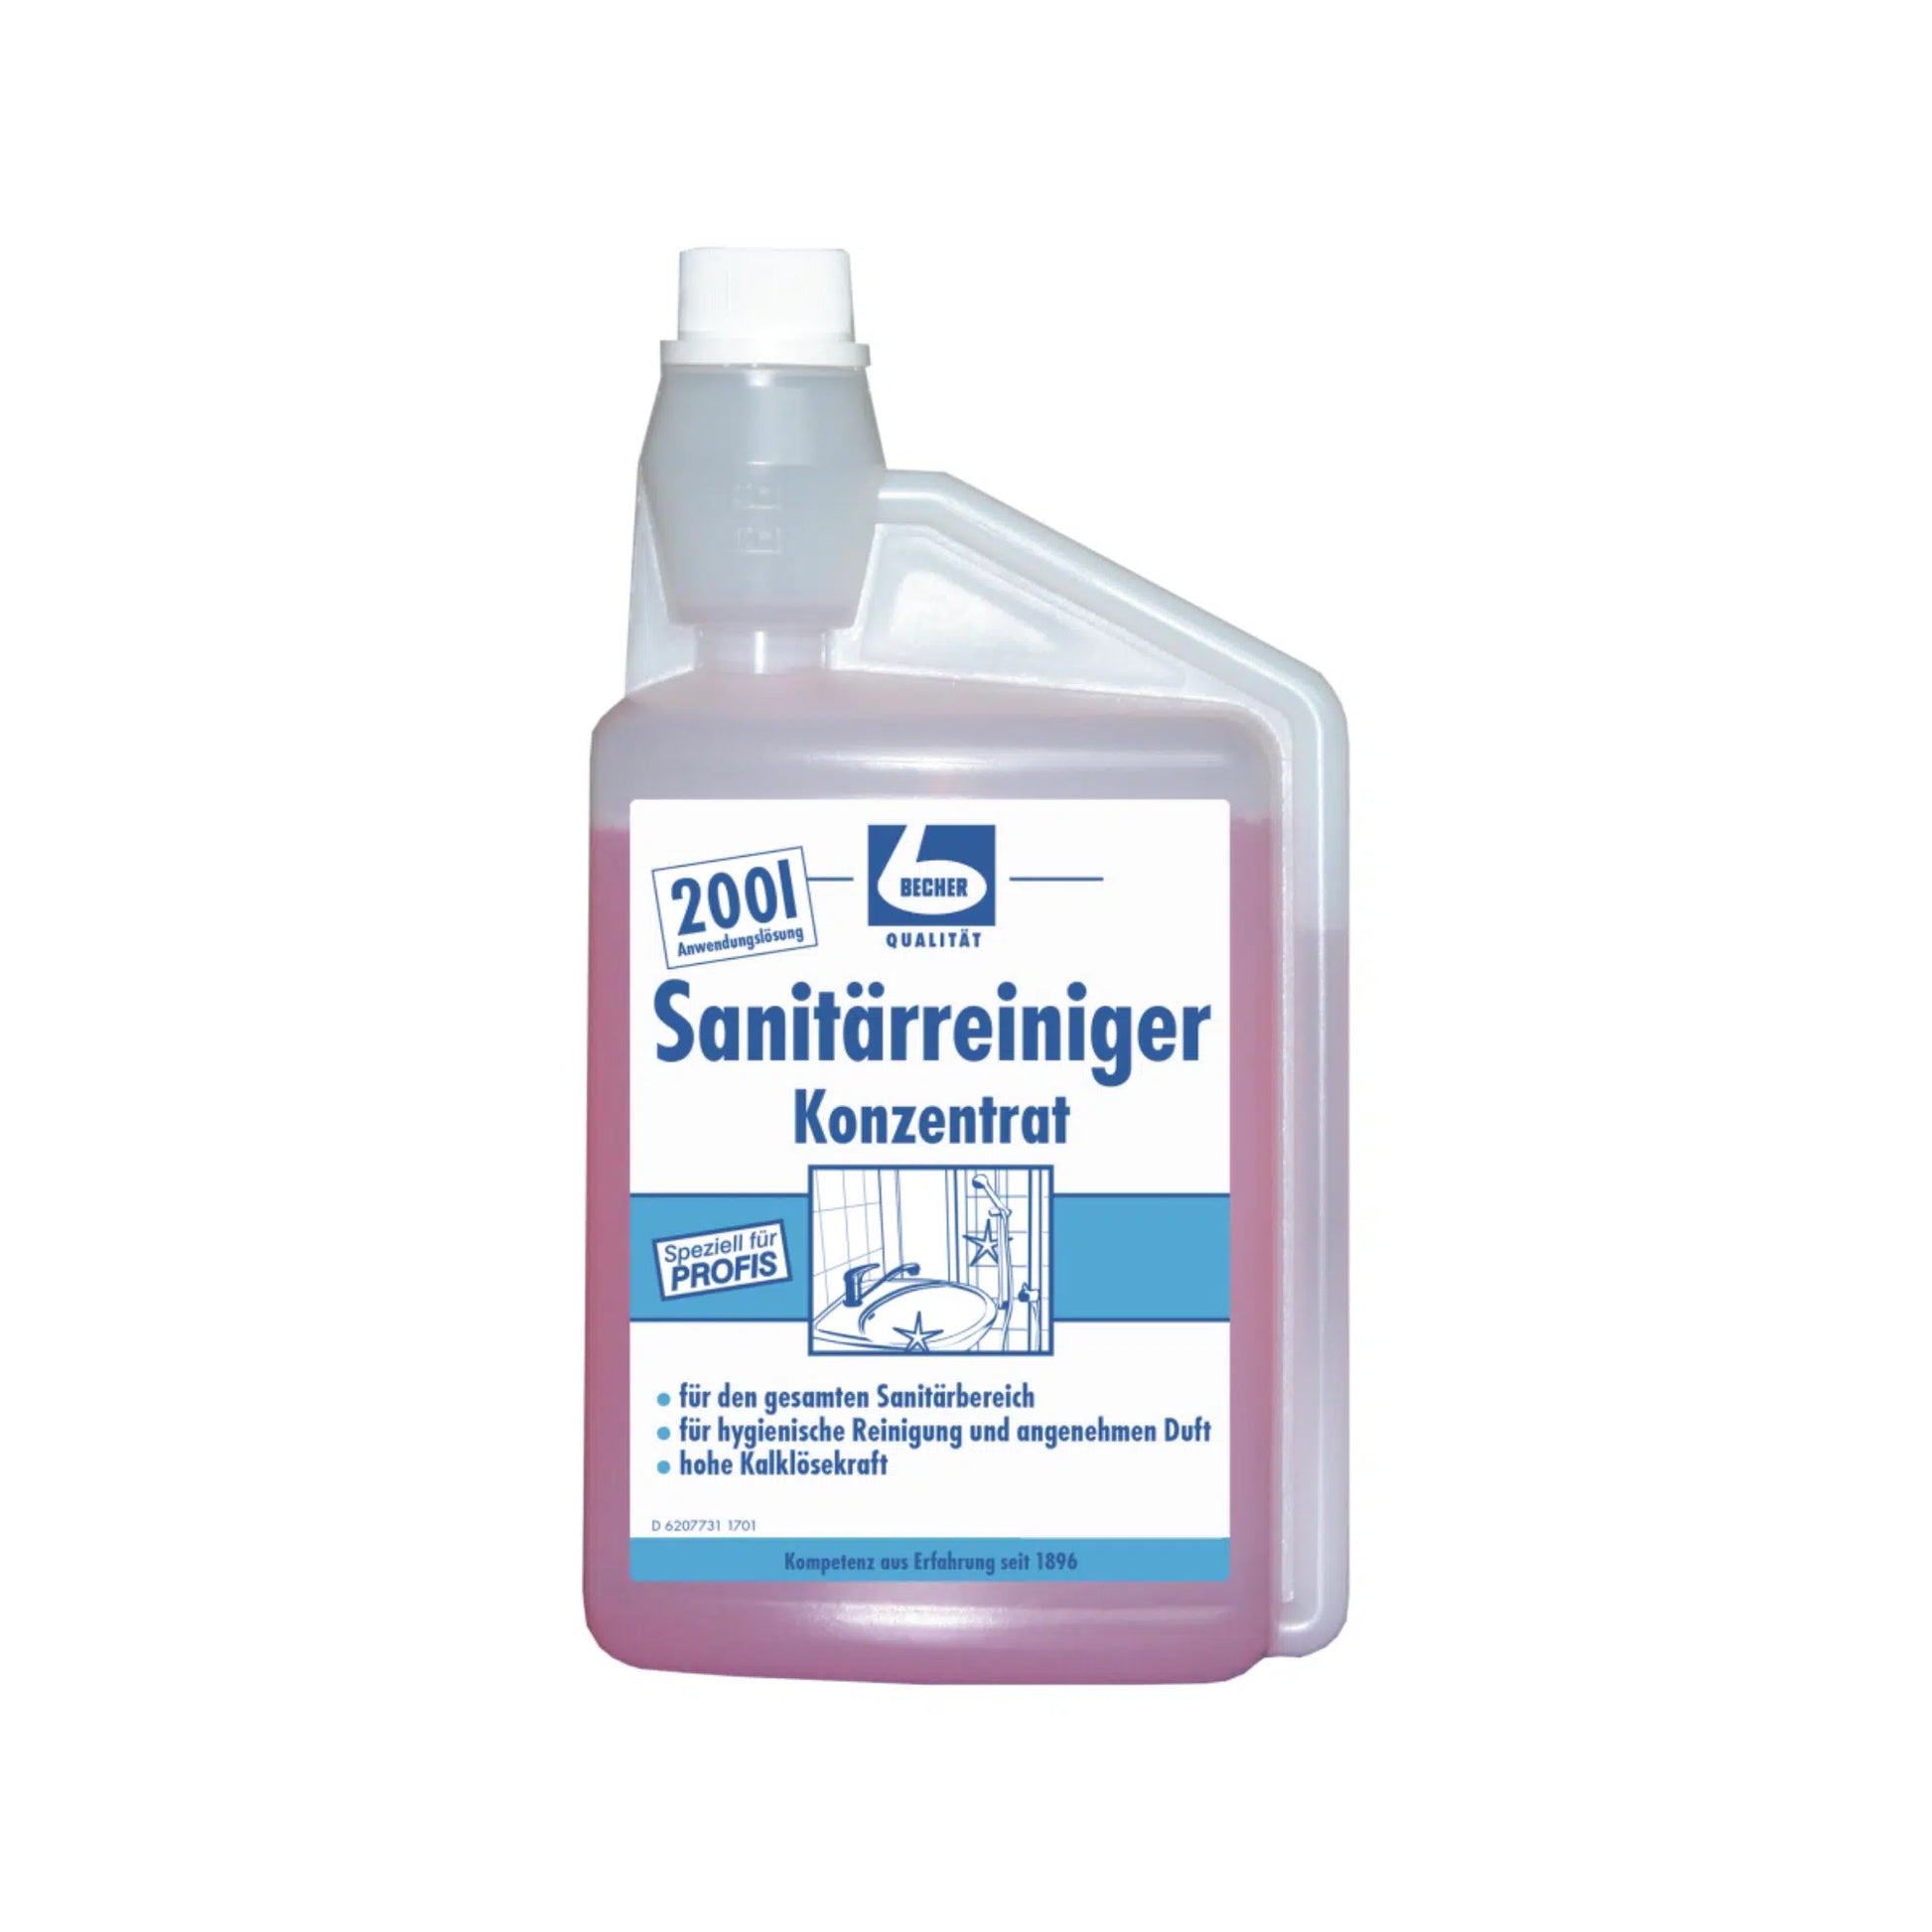 Plastikflasche Dr. Becher Sanitärreiniger Konzentrat - 1 Liter | Flasche (1000 ml), ein konzentrierter Badreiniger für die tägliche Unterhaltsreinigung. Das Etikett ist in deutscher Sprache und trägt den Namen der Dr. Becher GmbH.